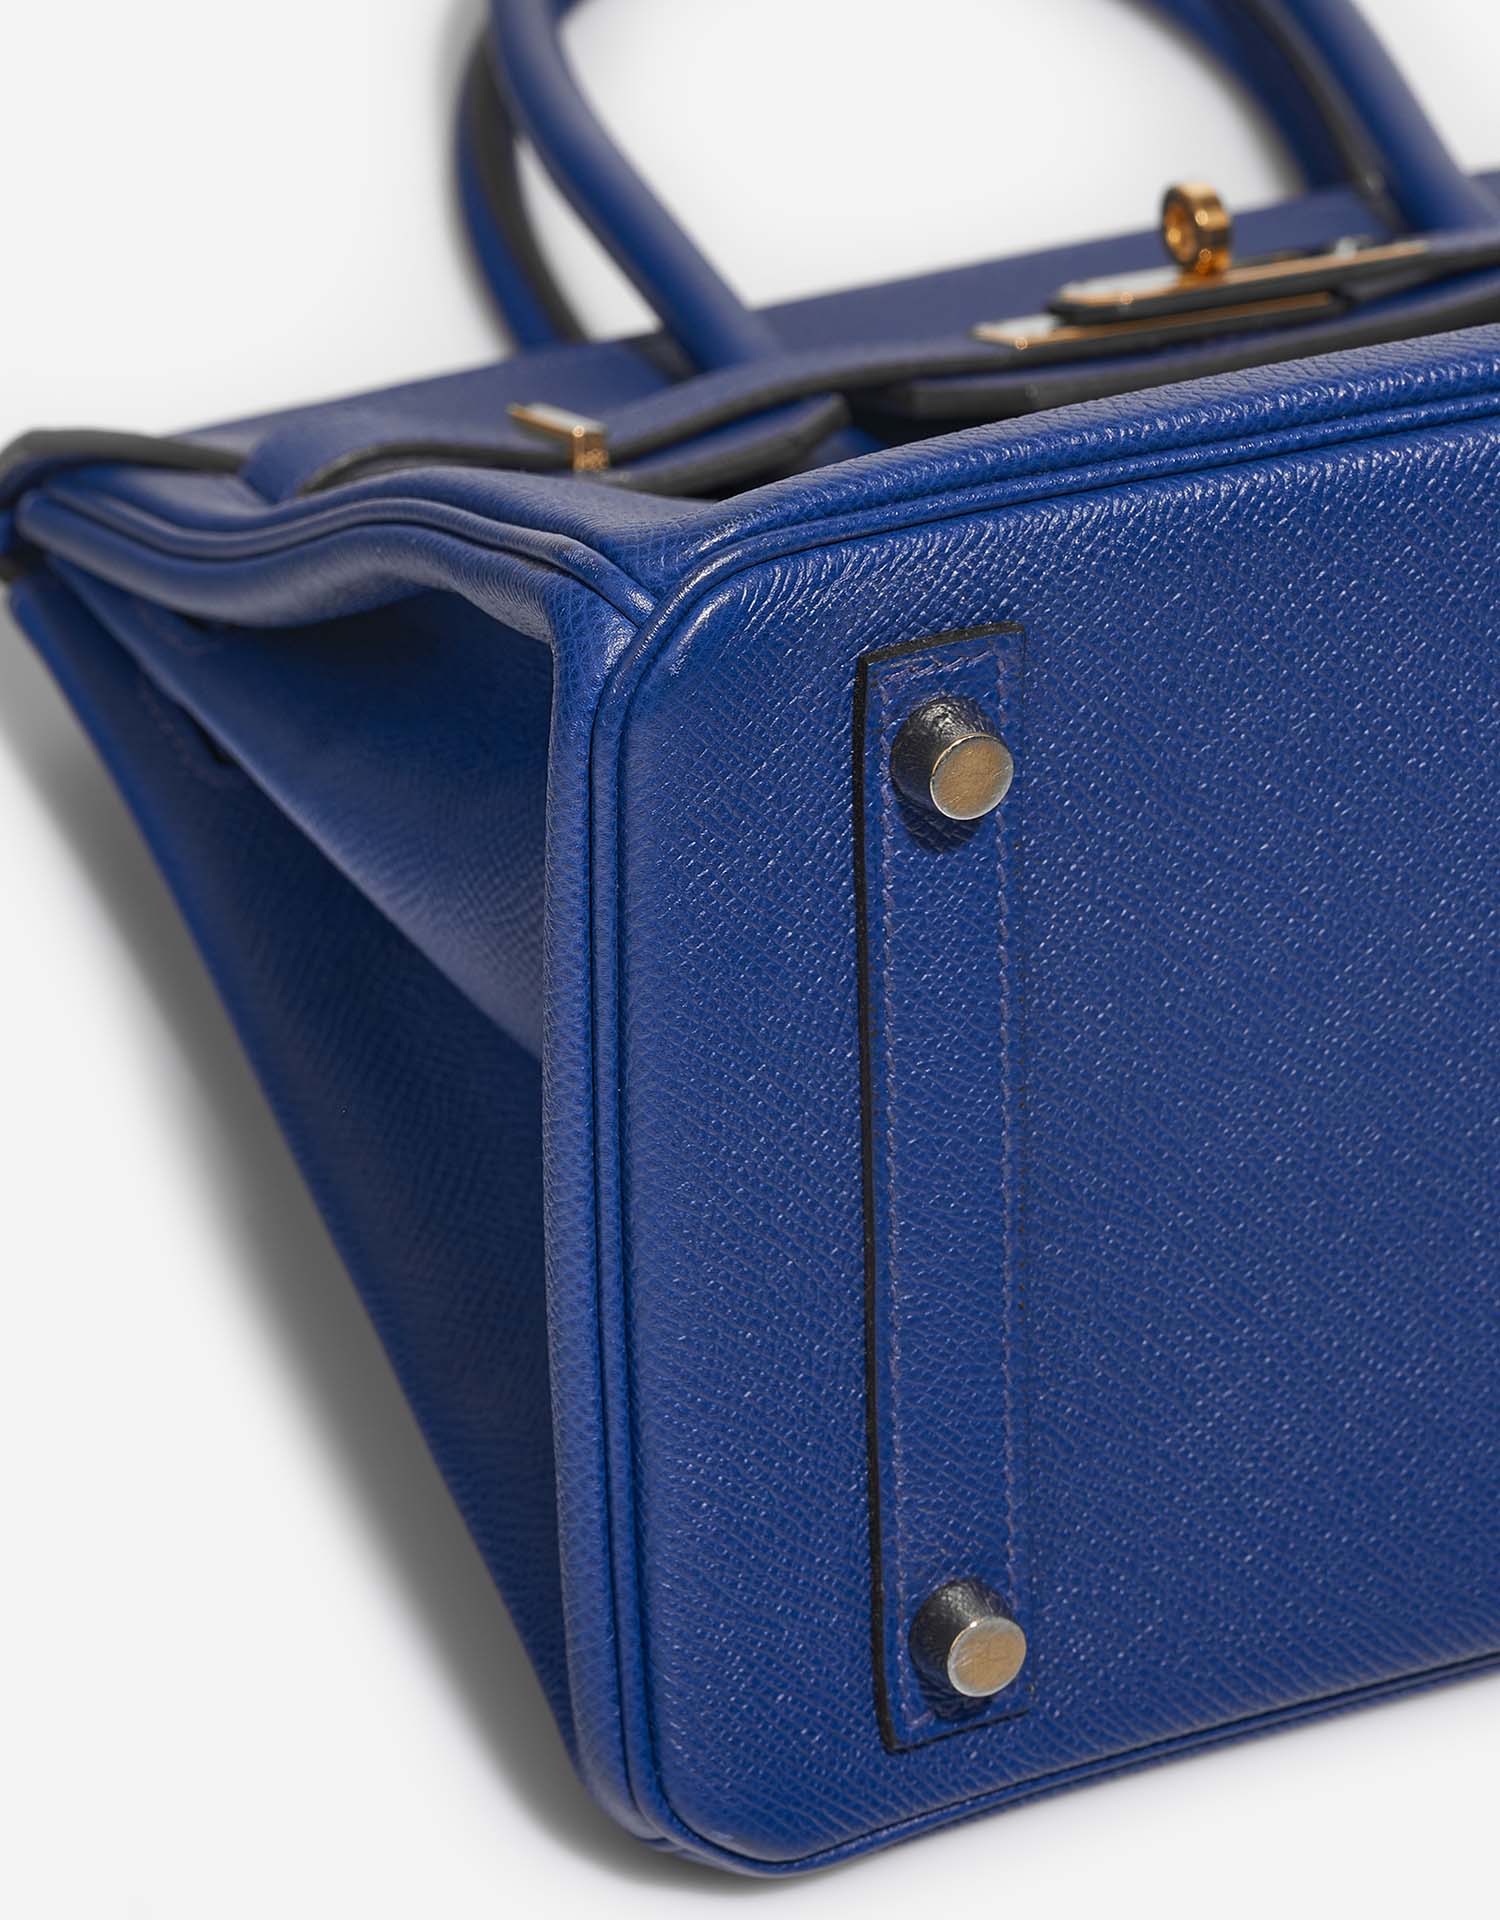 Hermès Birkin 30 BleuElectrique signs of wear| Sell your designer bag on Saclab.com